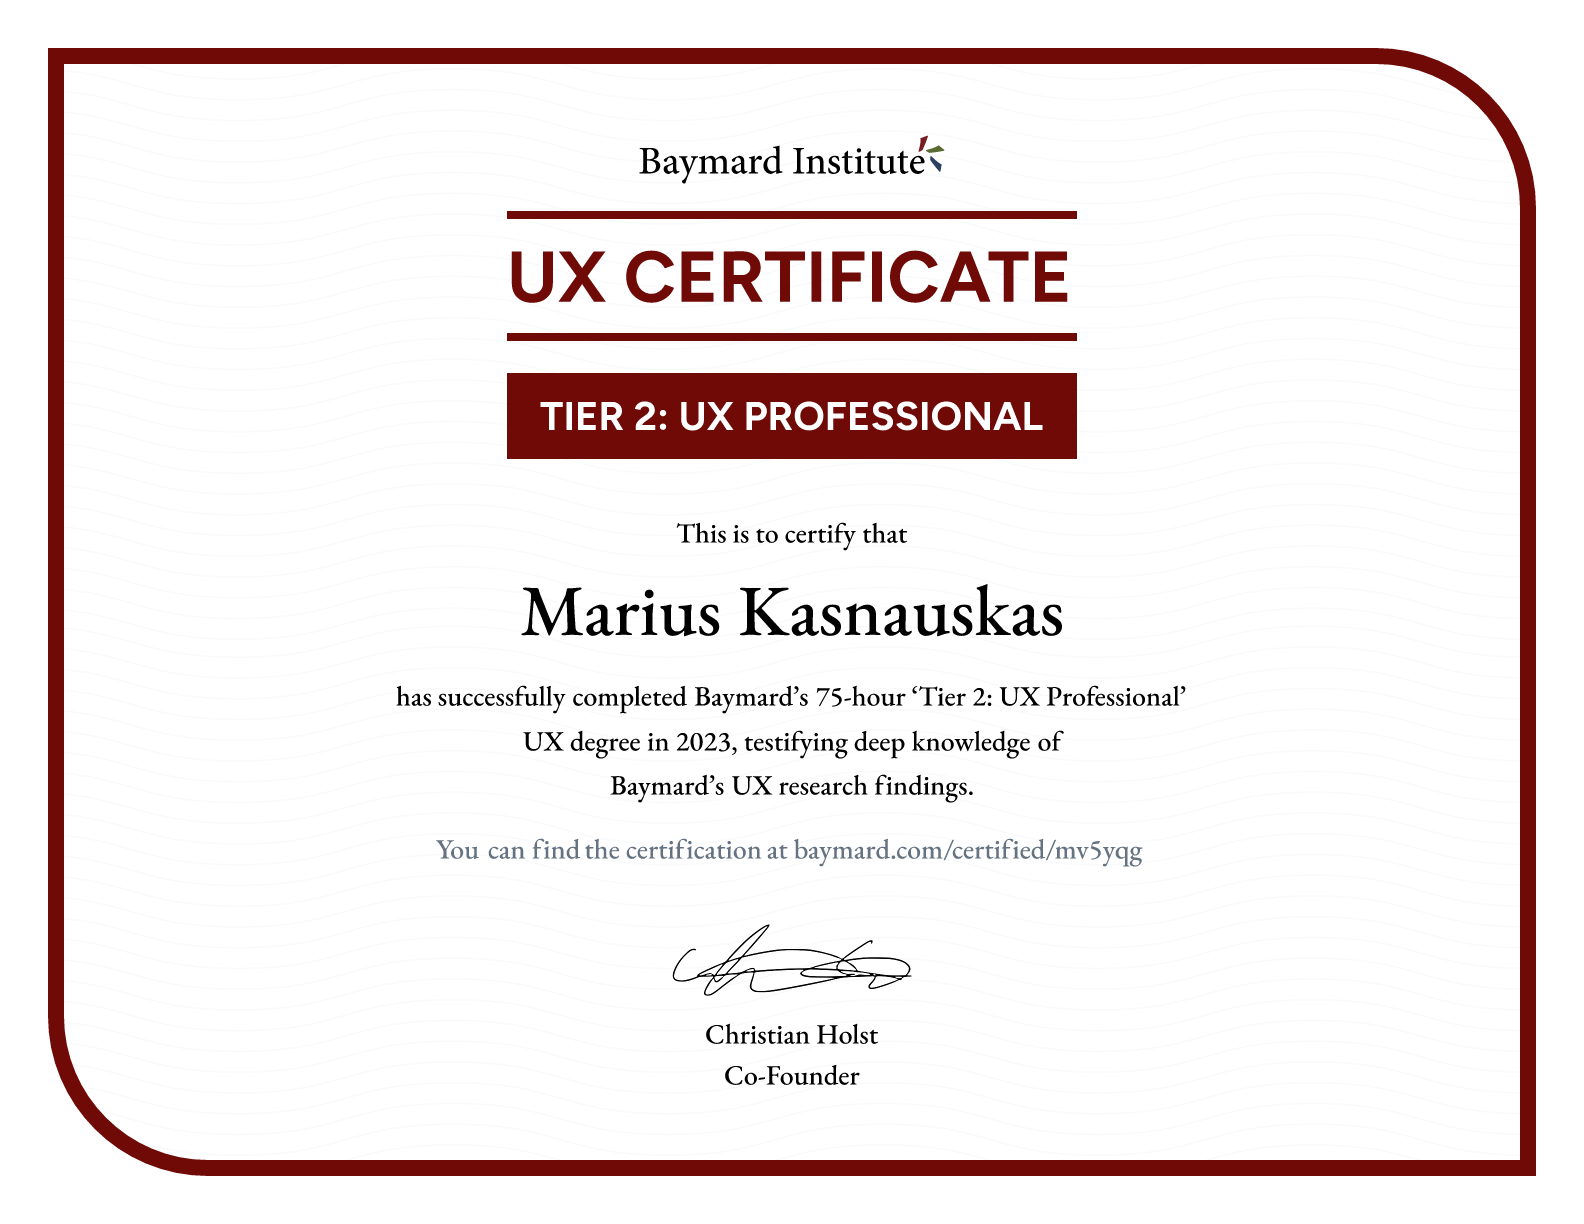 Marius Kasnauskas’s certificate